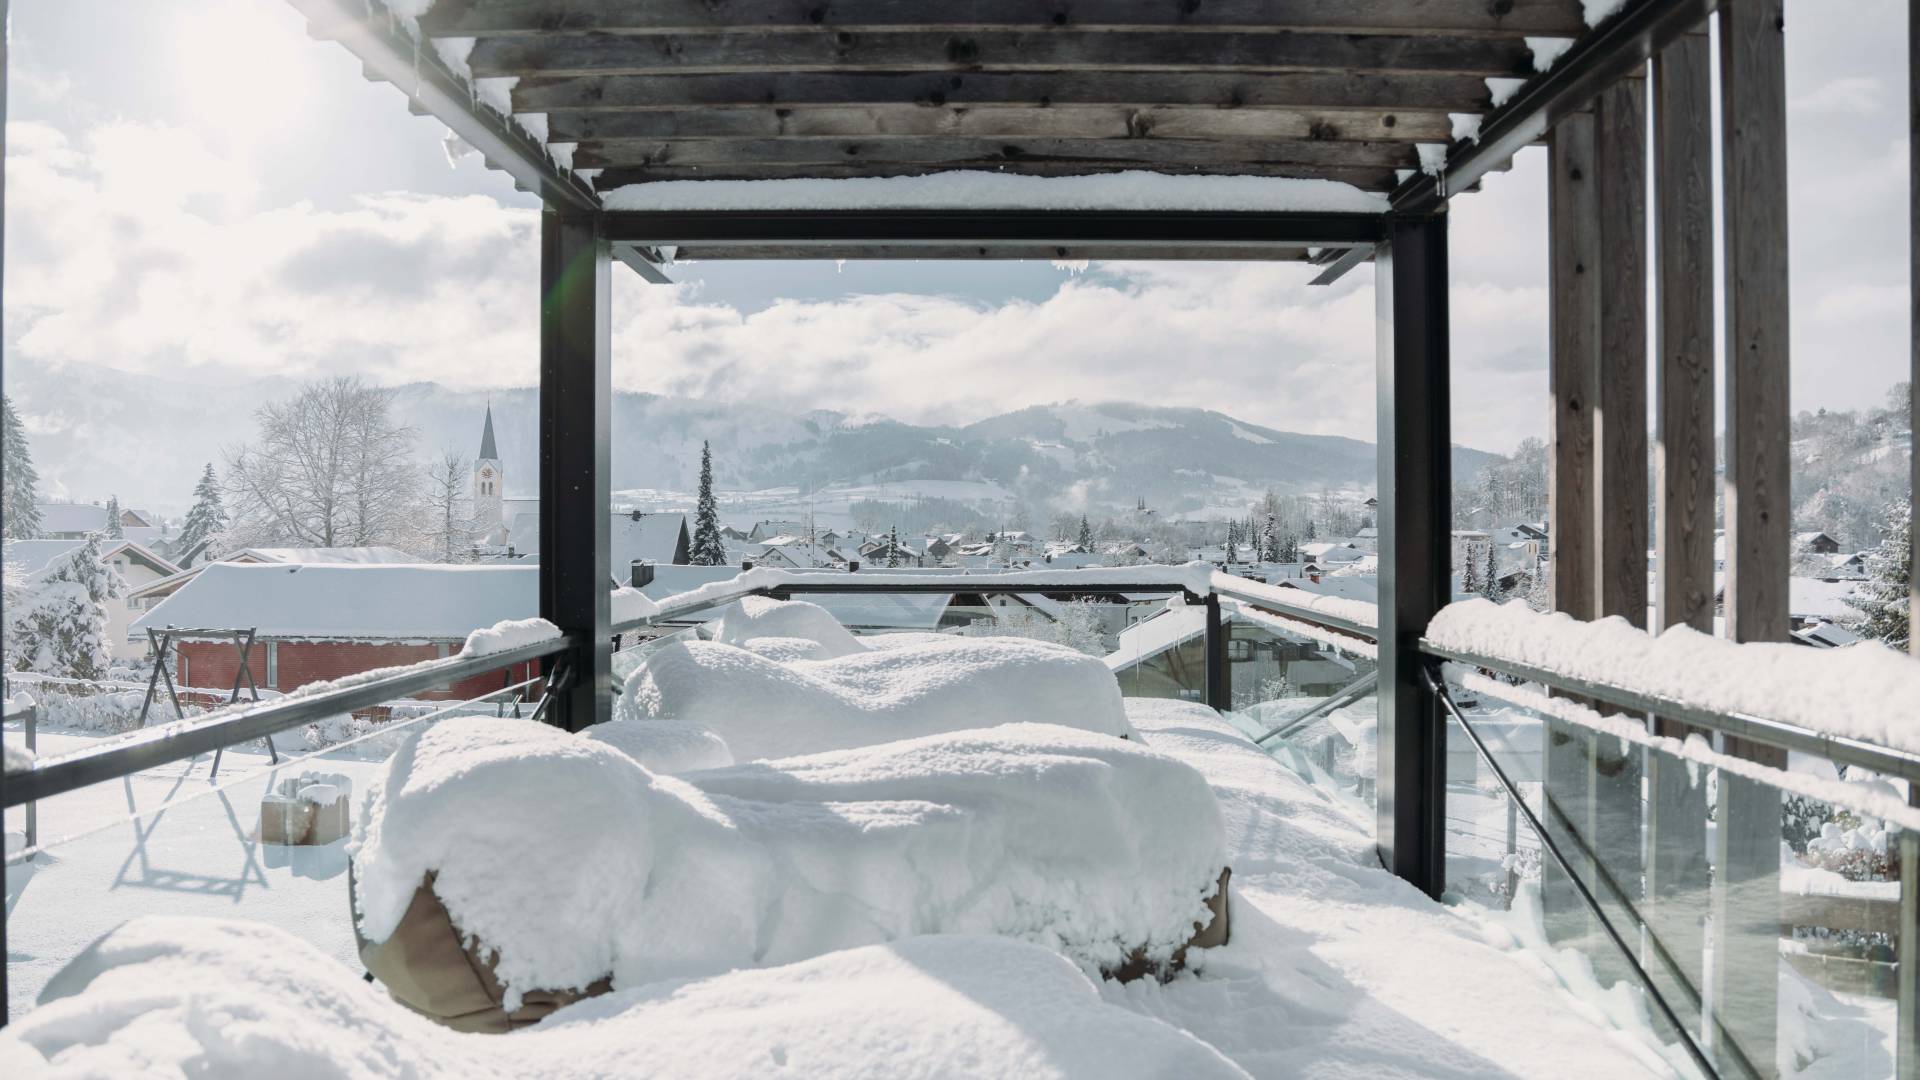 Eine Wellnessterrasse dessen Mobiliar im Winter mit einer Schneeschicht bedeckt ist und Lust auf Winterurlaub in Bayern macht.